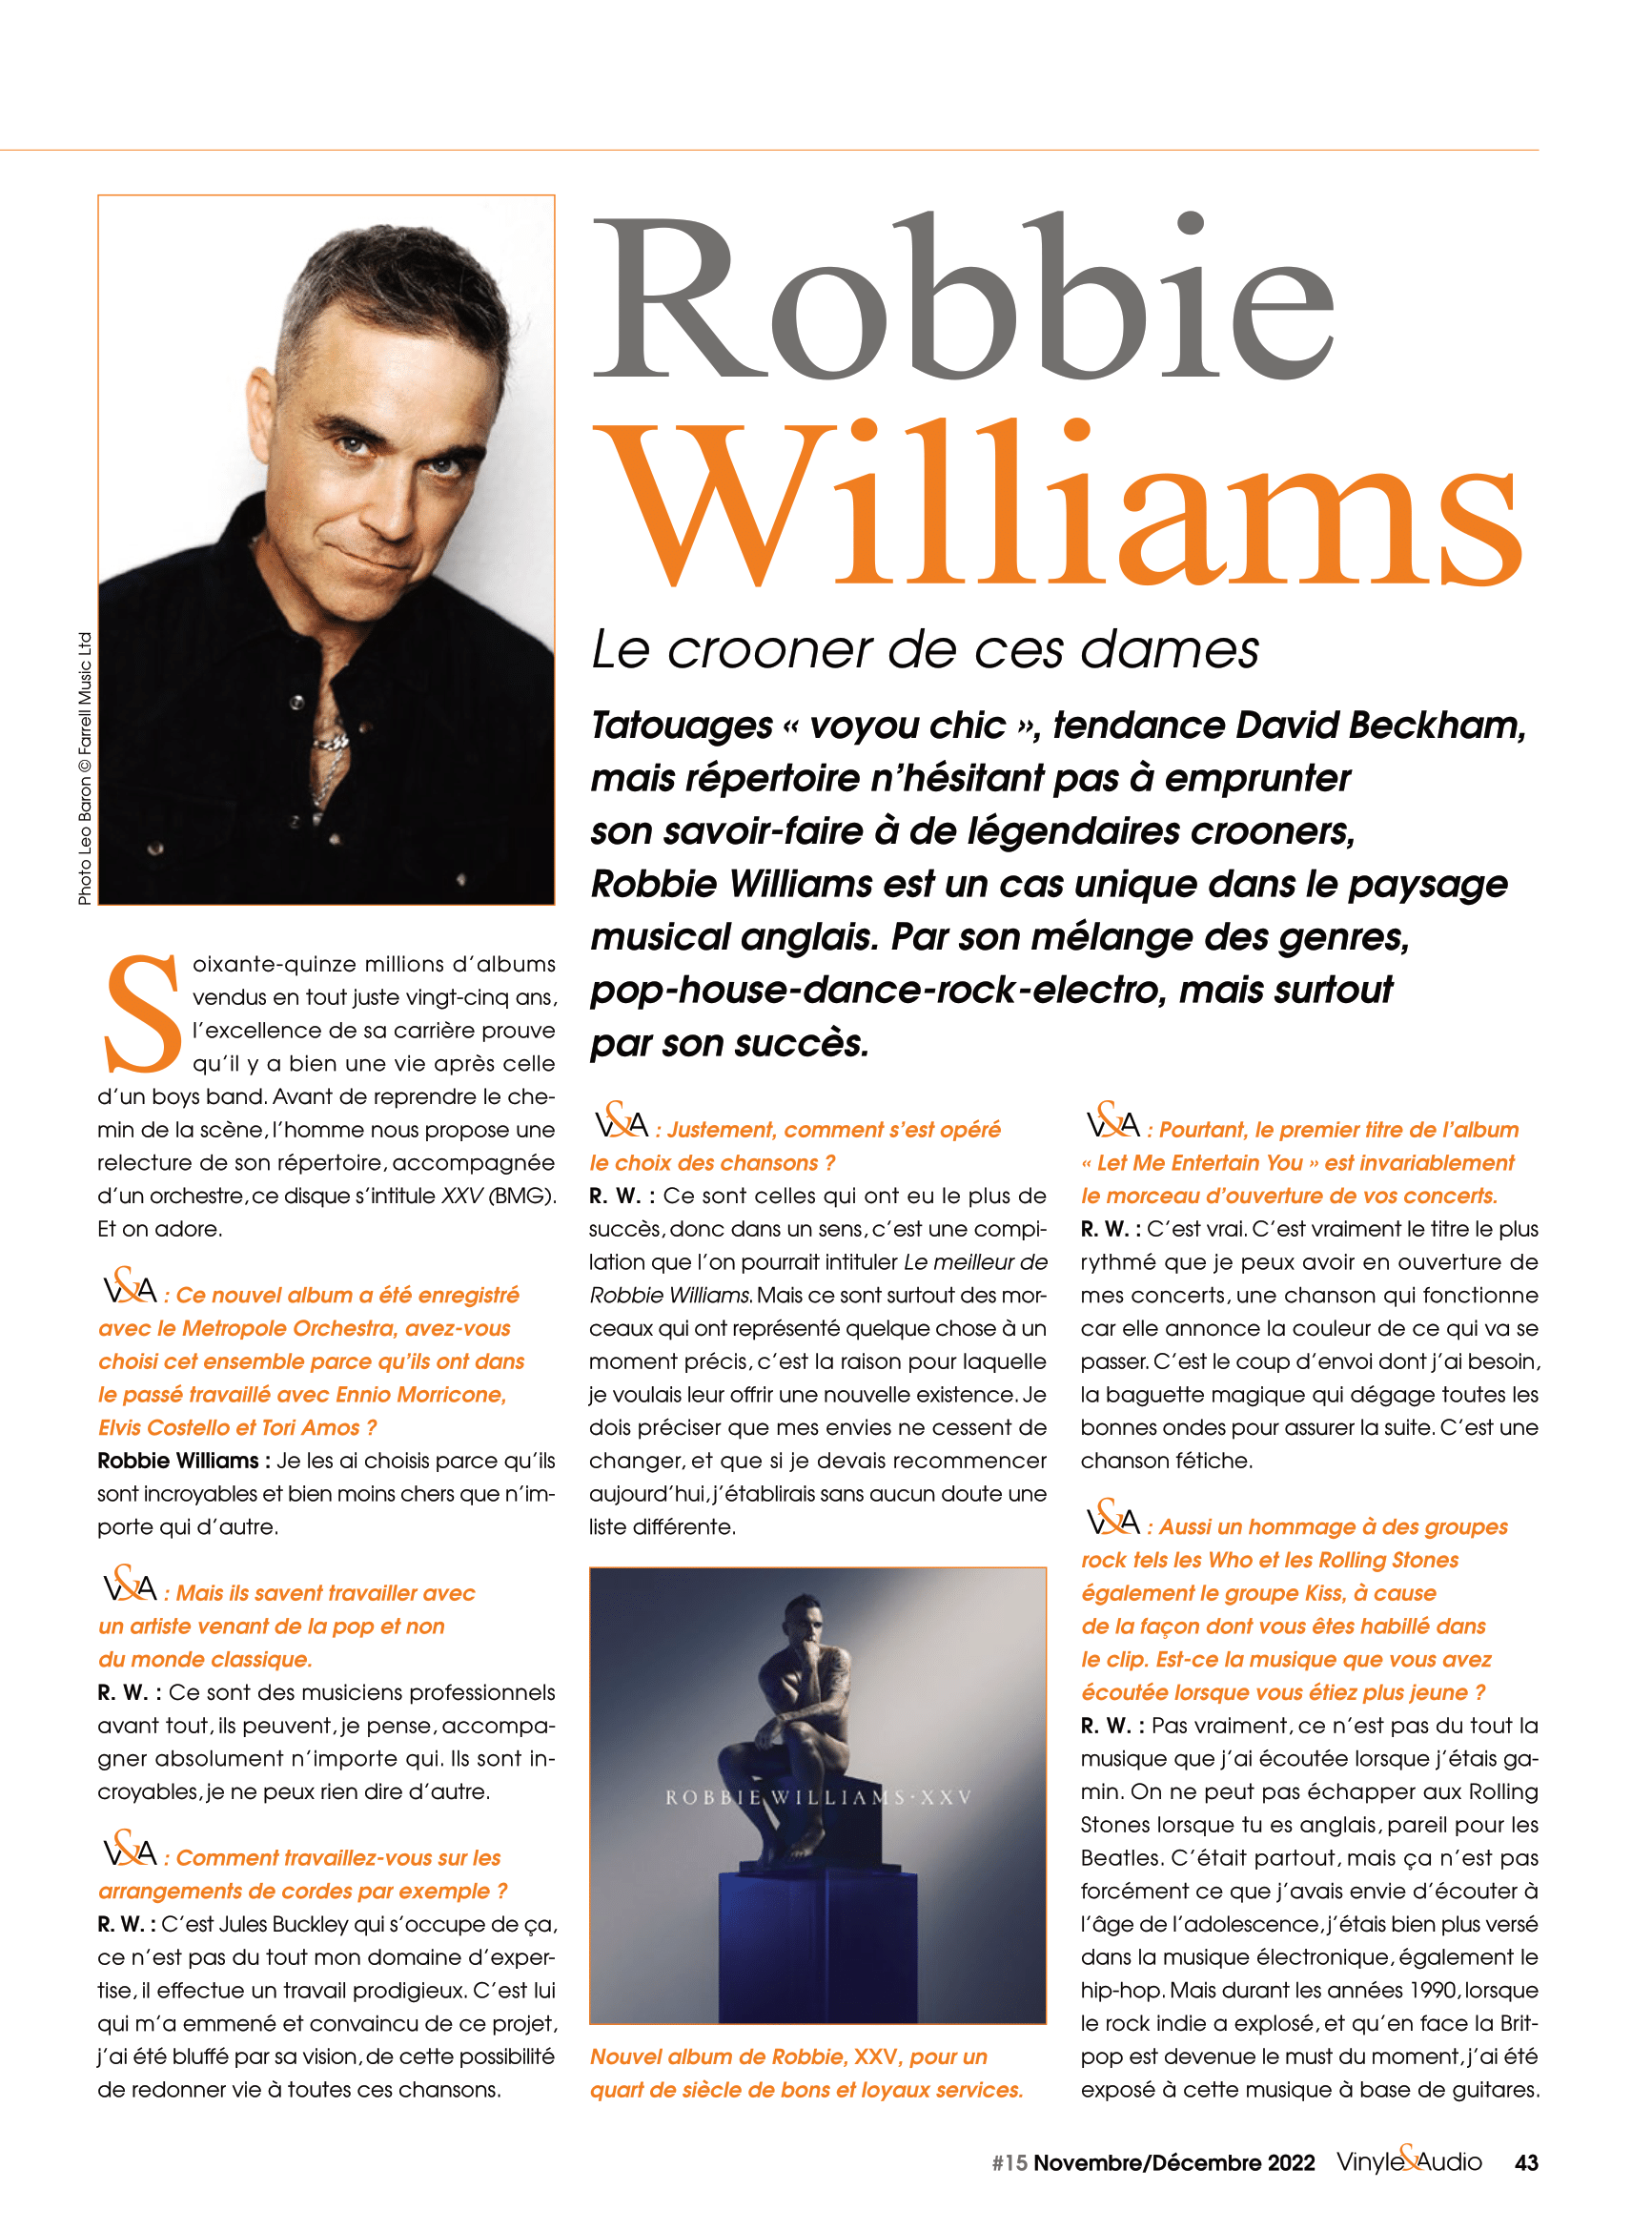 Vinyle & Audio n°15 : Robbie Williams, le crooner de ces dames